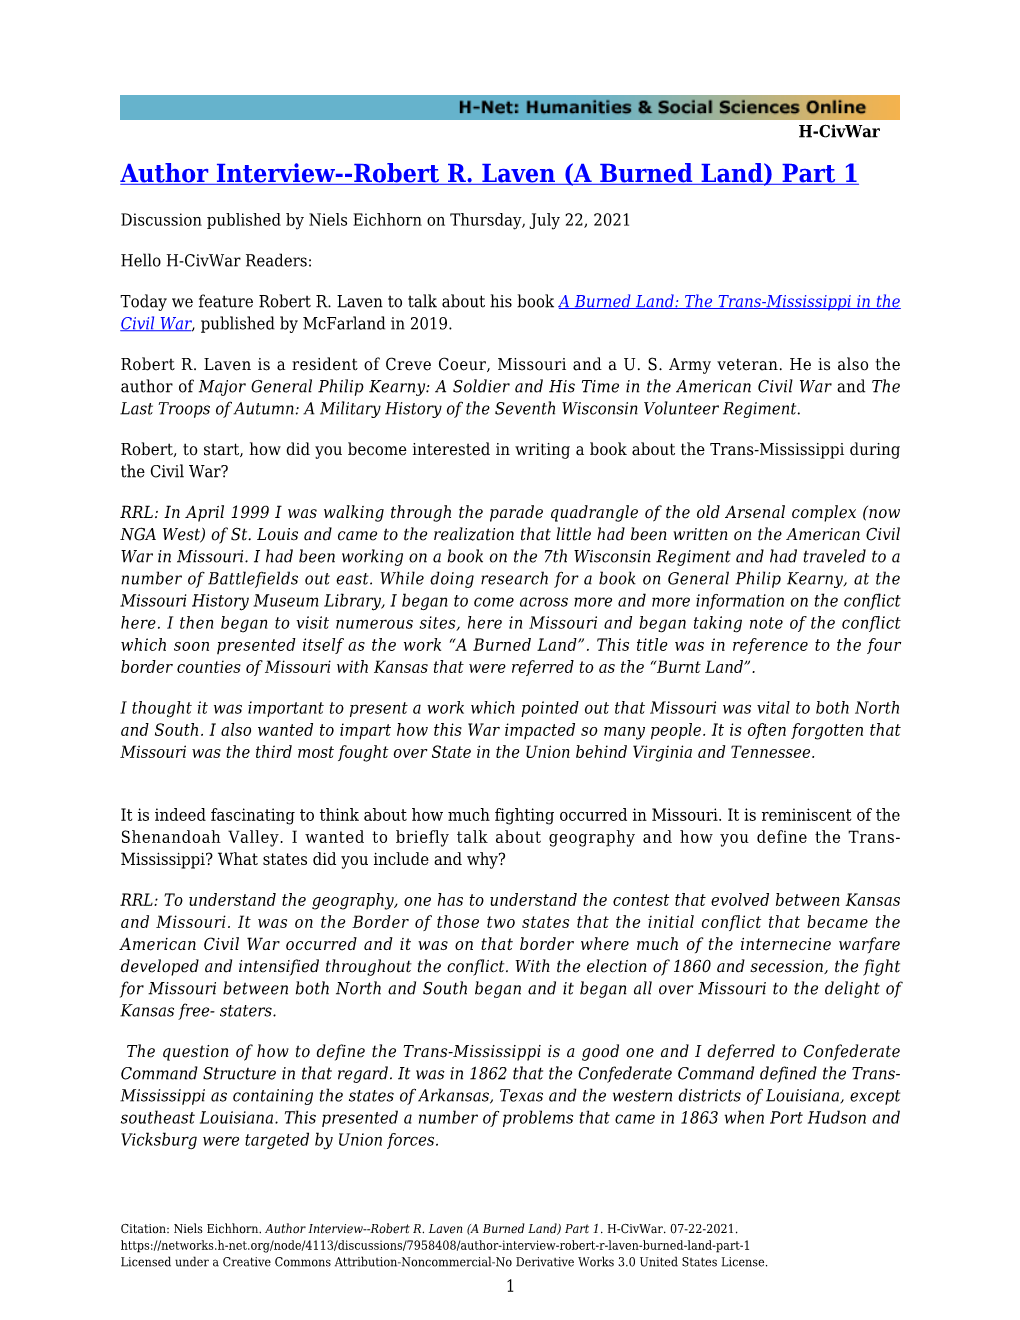 Author Interview--Robert R. Laven (A Burned Land) Part 1